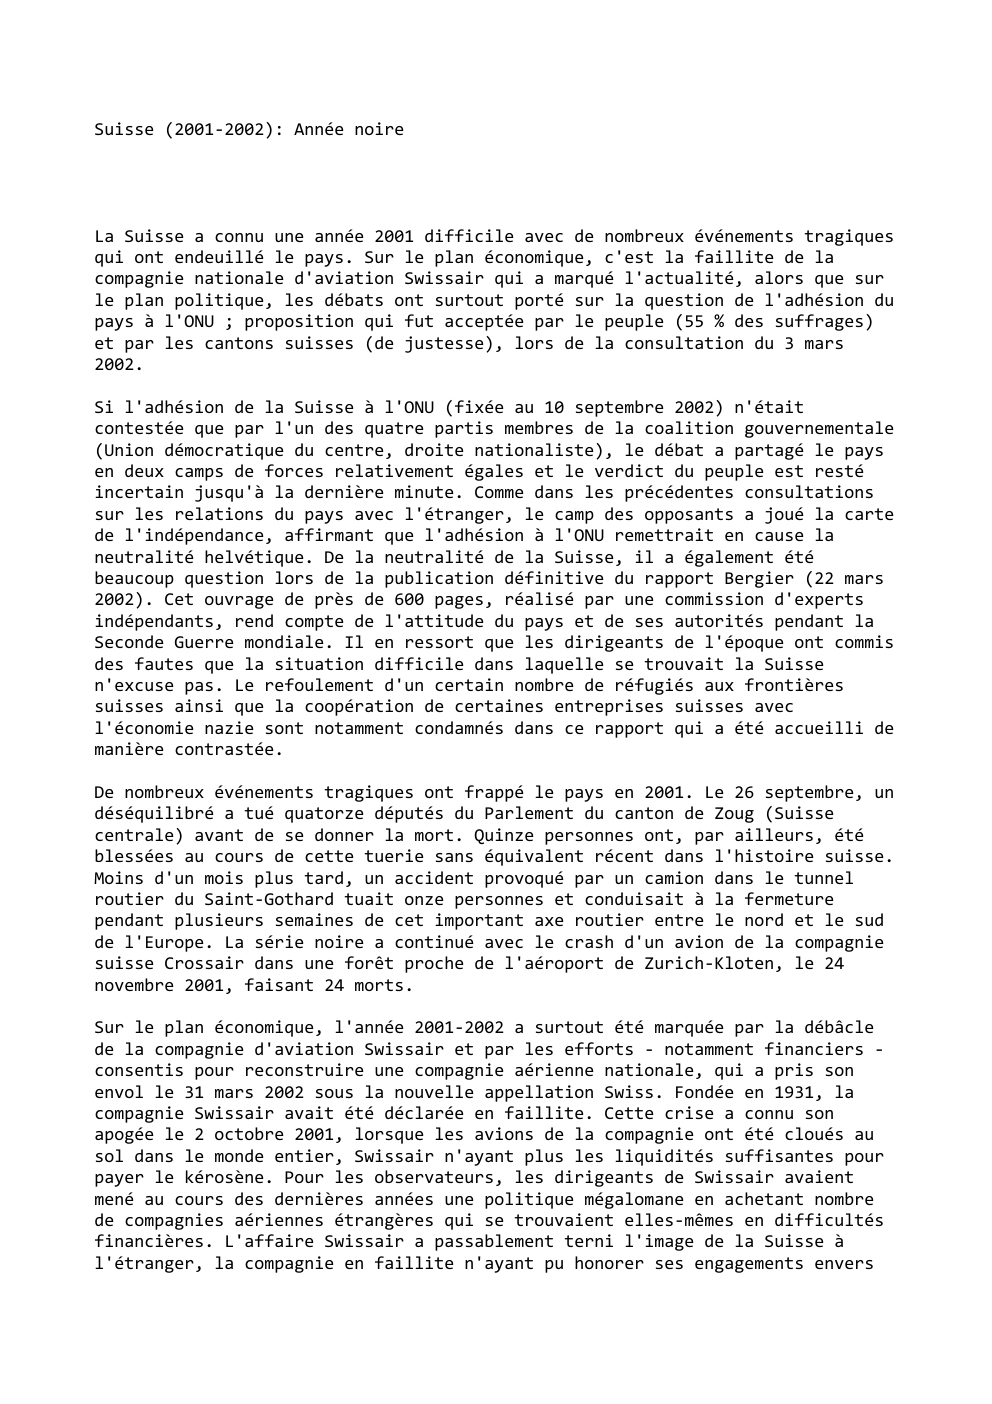 Prévisualisation du document Suisse (2001-2002): Année noire

La Suisse a connu une année 2001 difficile avec de nombreux événements tragiques
qui ont endeuillé...